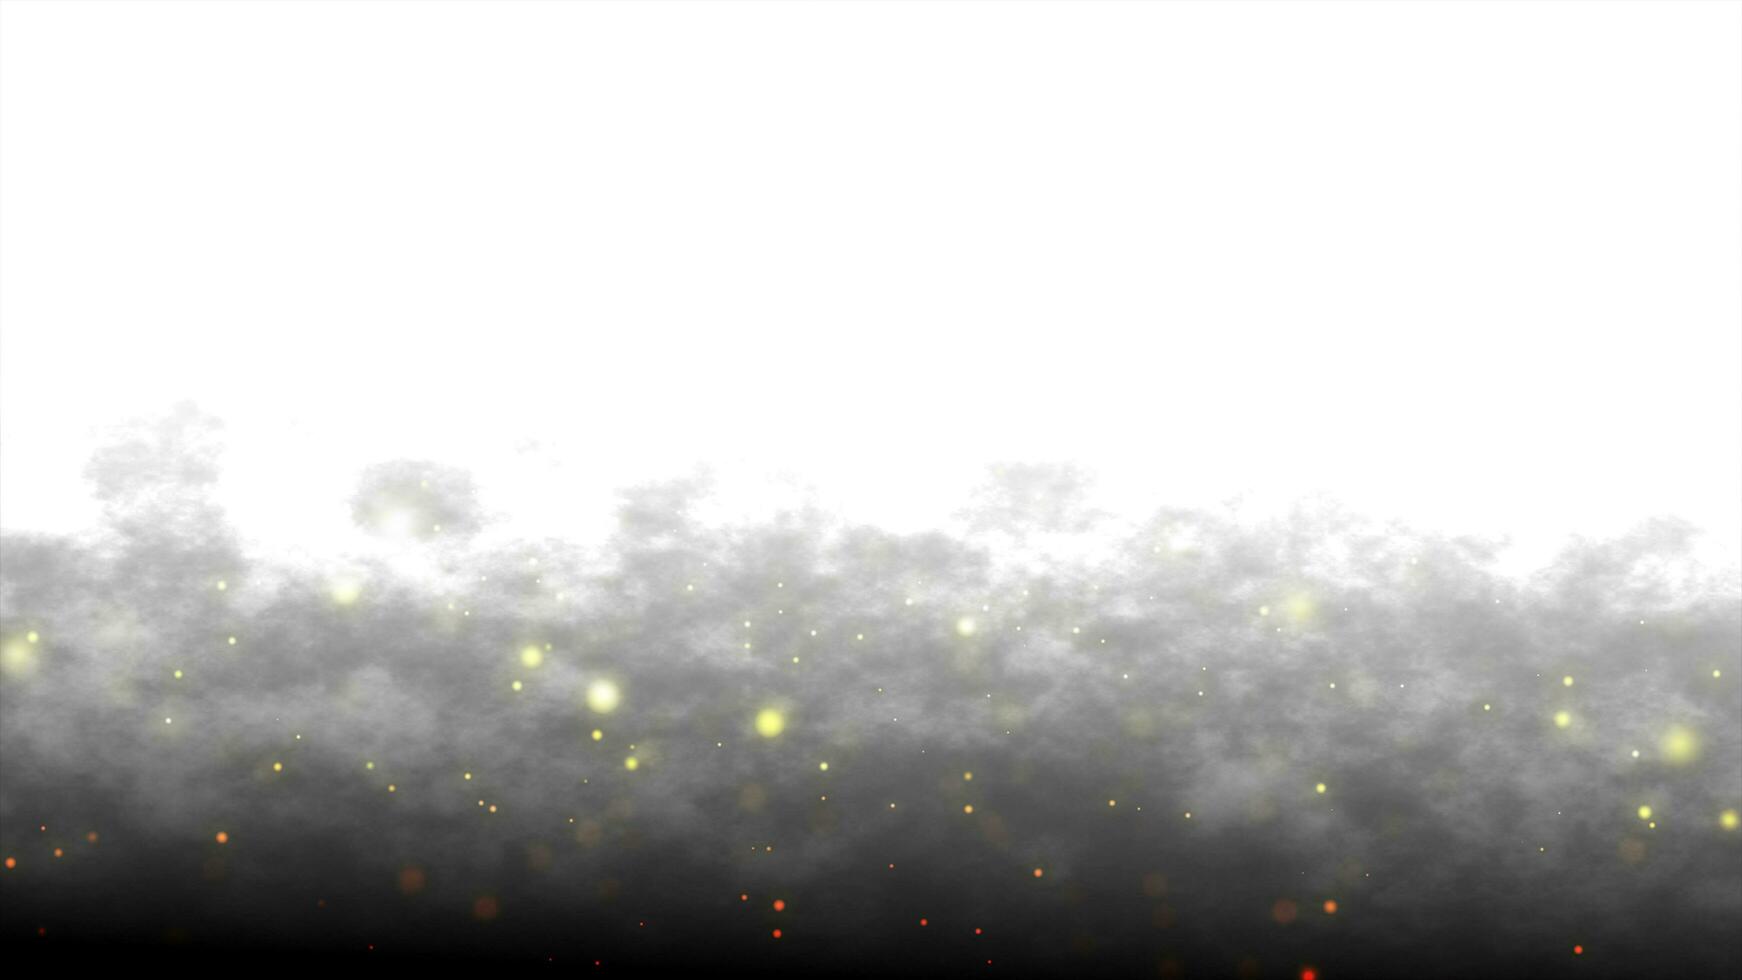 mooi gouden glinsterende stof deeltjes met donker Aan wit achtergrond in langzaam beweging. beweging grafisch animatie van dynamisch krijgen omhoog in de wind bokeh deeltjes. abstract rook digitaal sjabloon foto